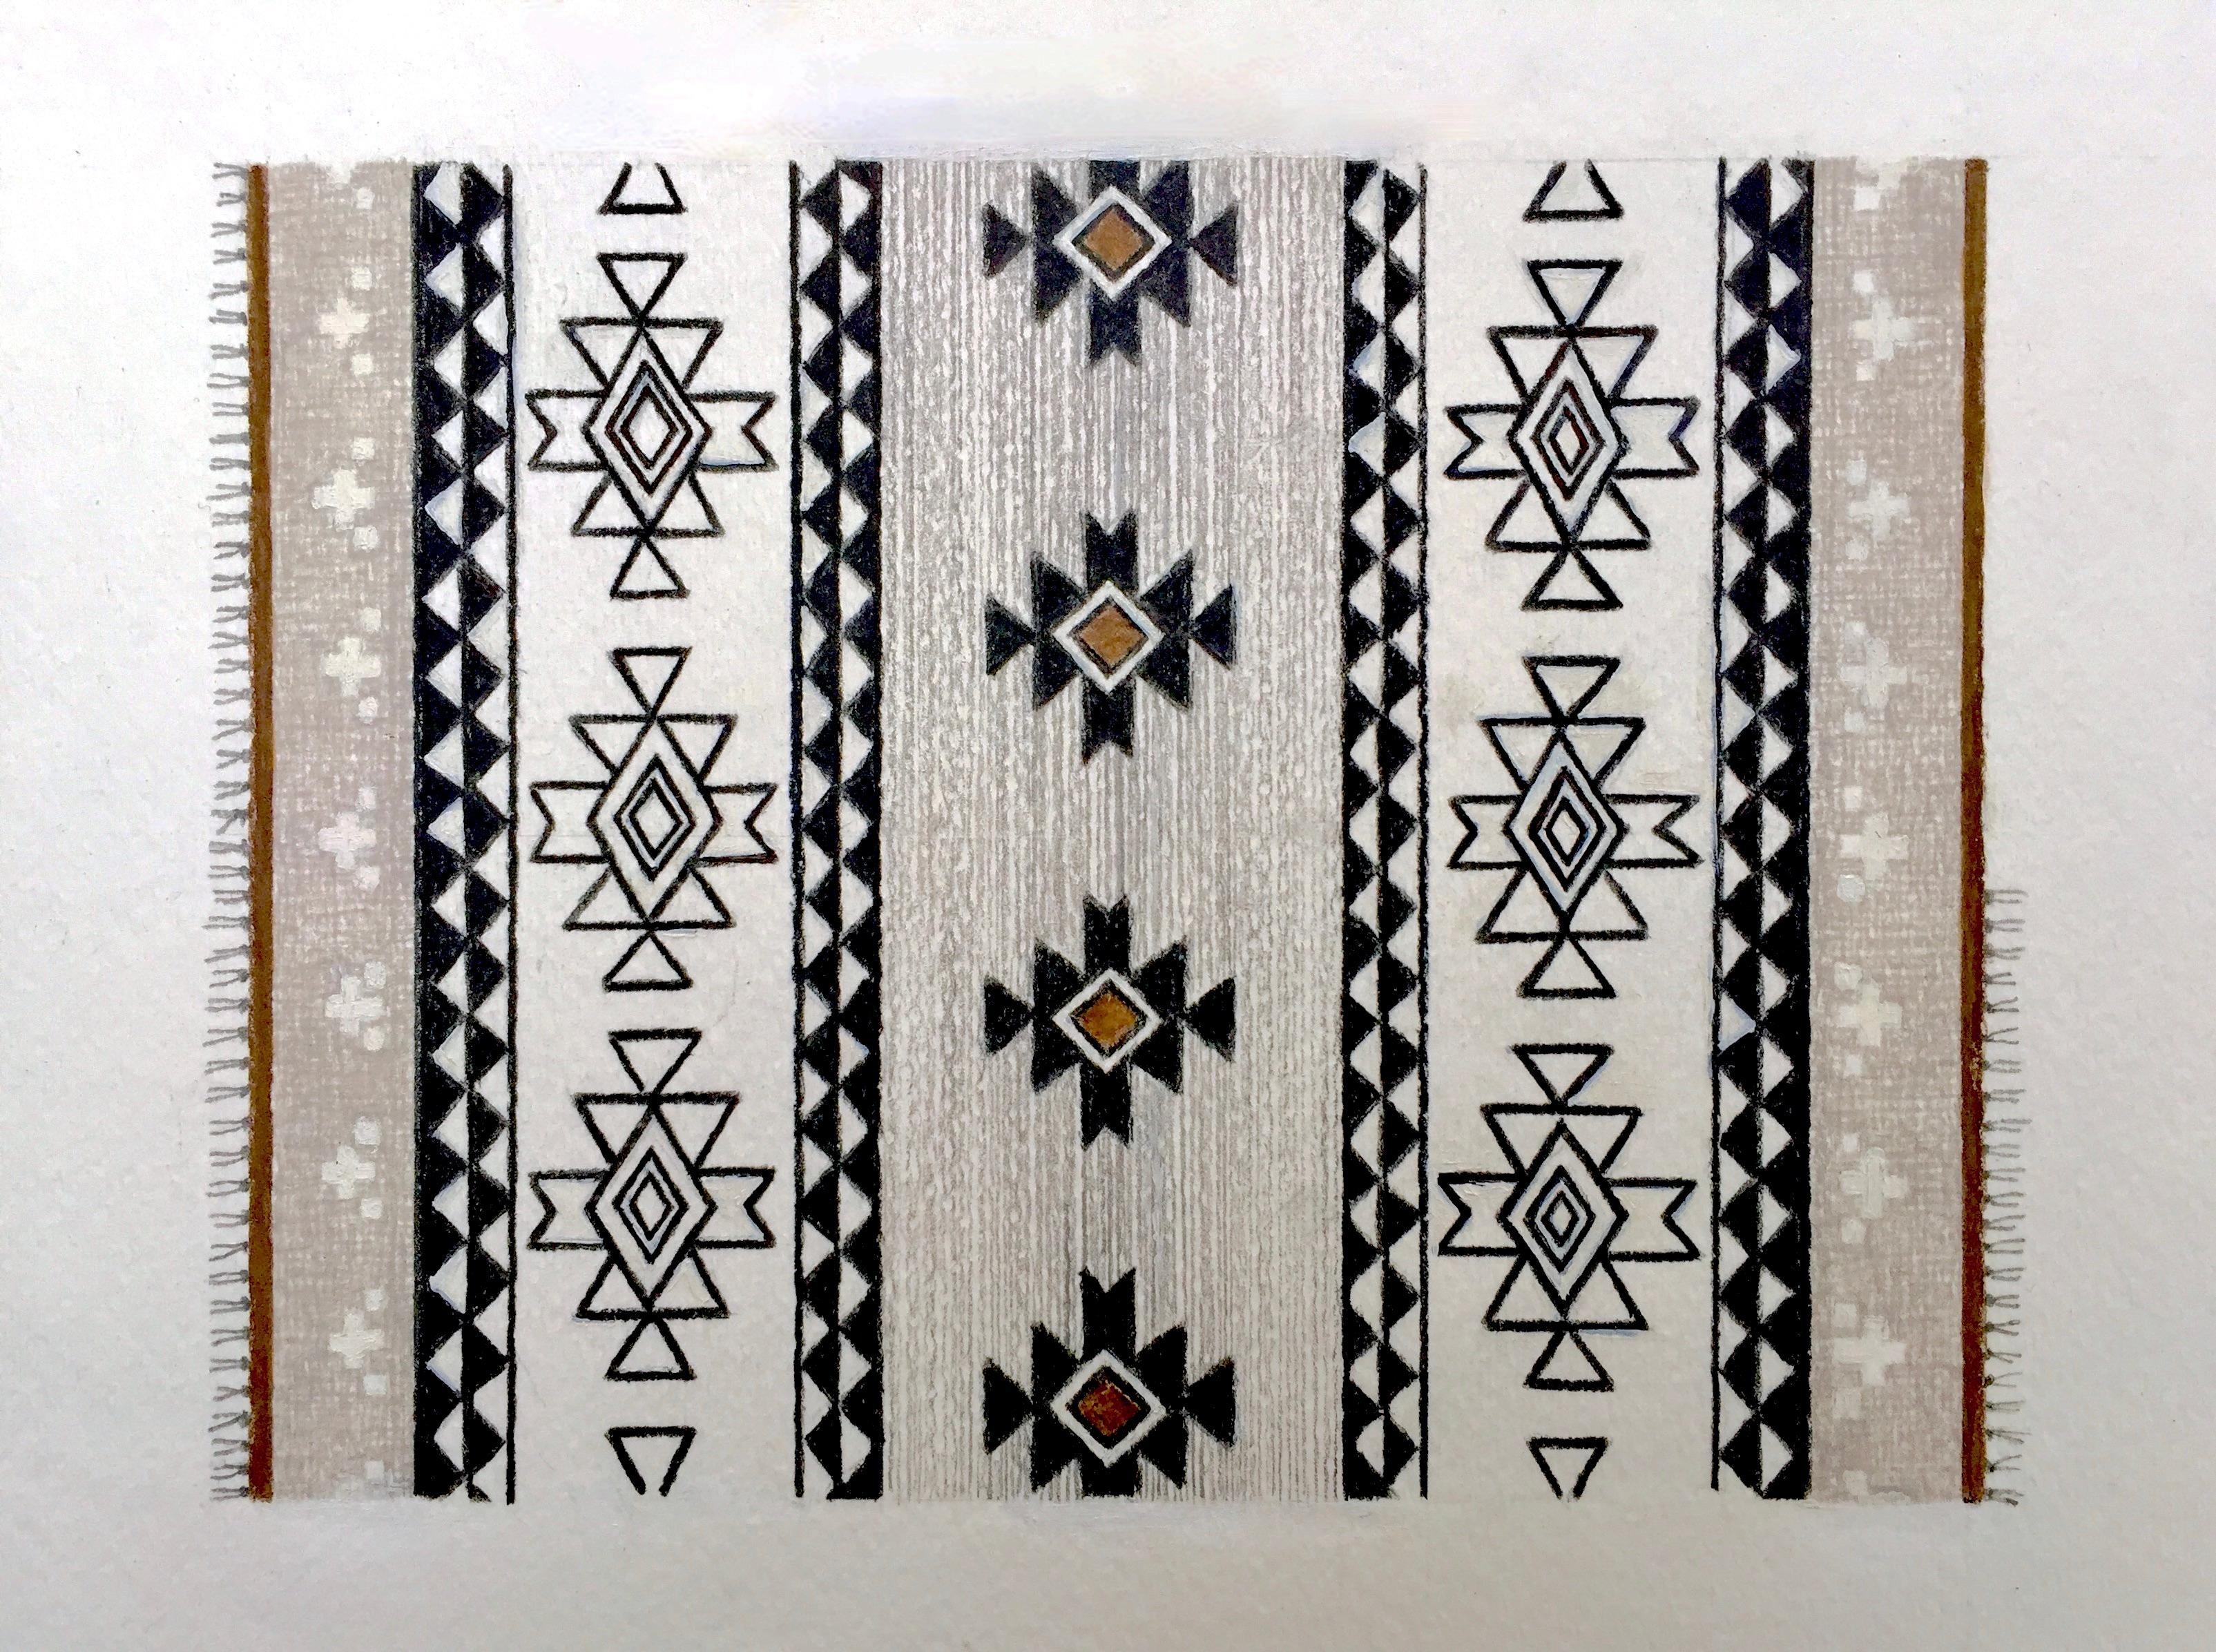 Dieses detaillierte Kunstwerk auf Papier legt den Schwerpunkt auf Design und Komposition. Ein von Navajo inspiriertes Teppichmotiv wird mit traditionellen Designelementen und einem modernen Ergebnis gestaltet. Symmetrie und geometrische Muster